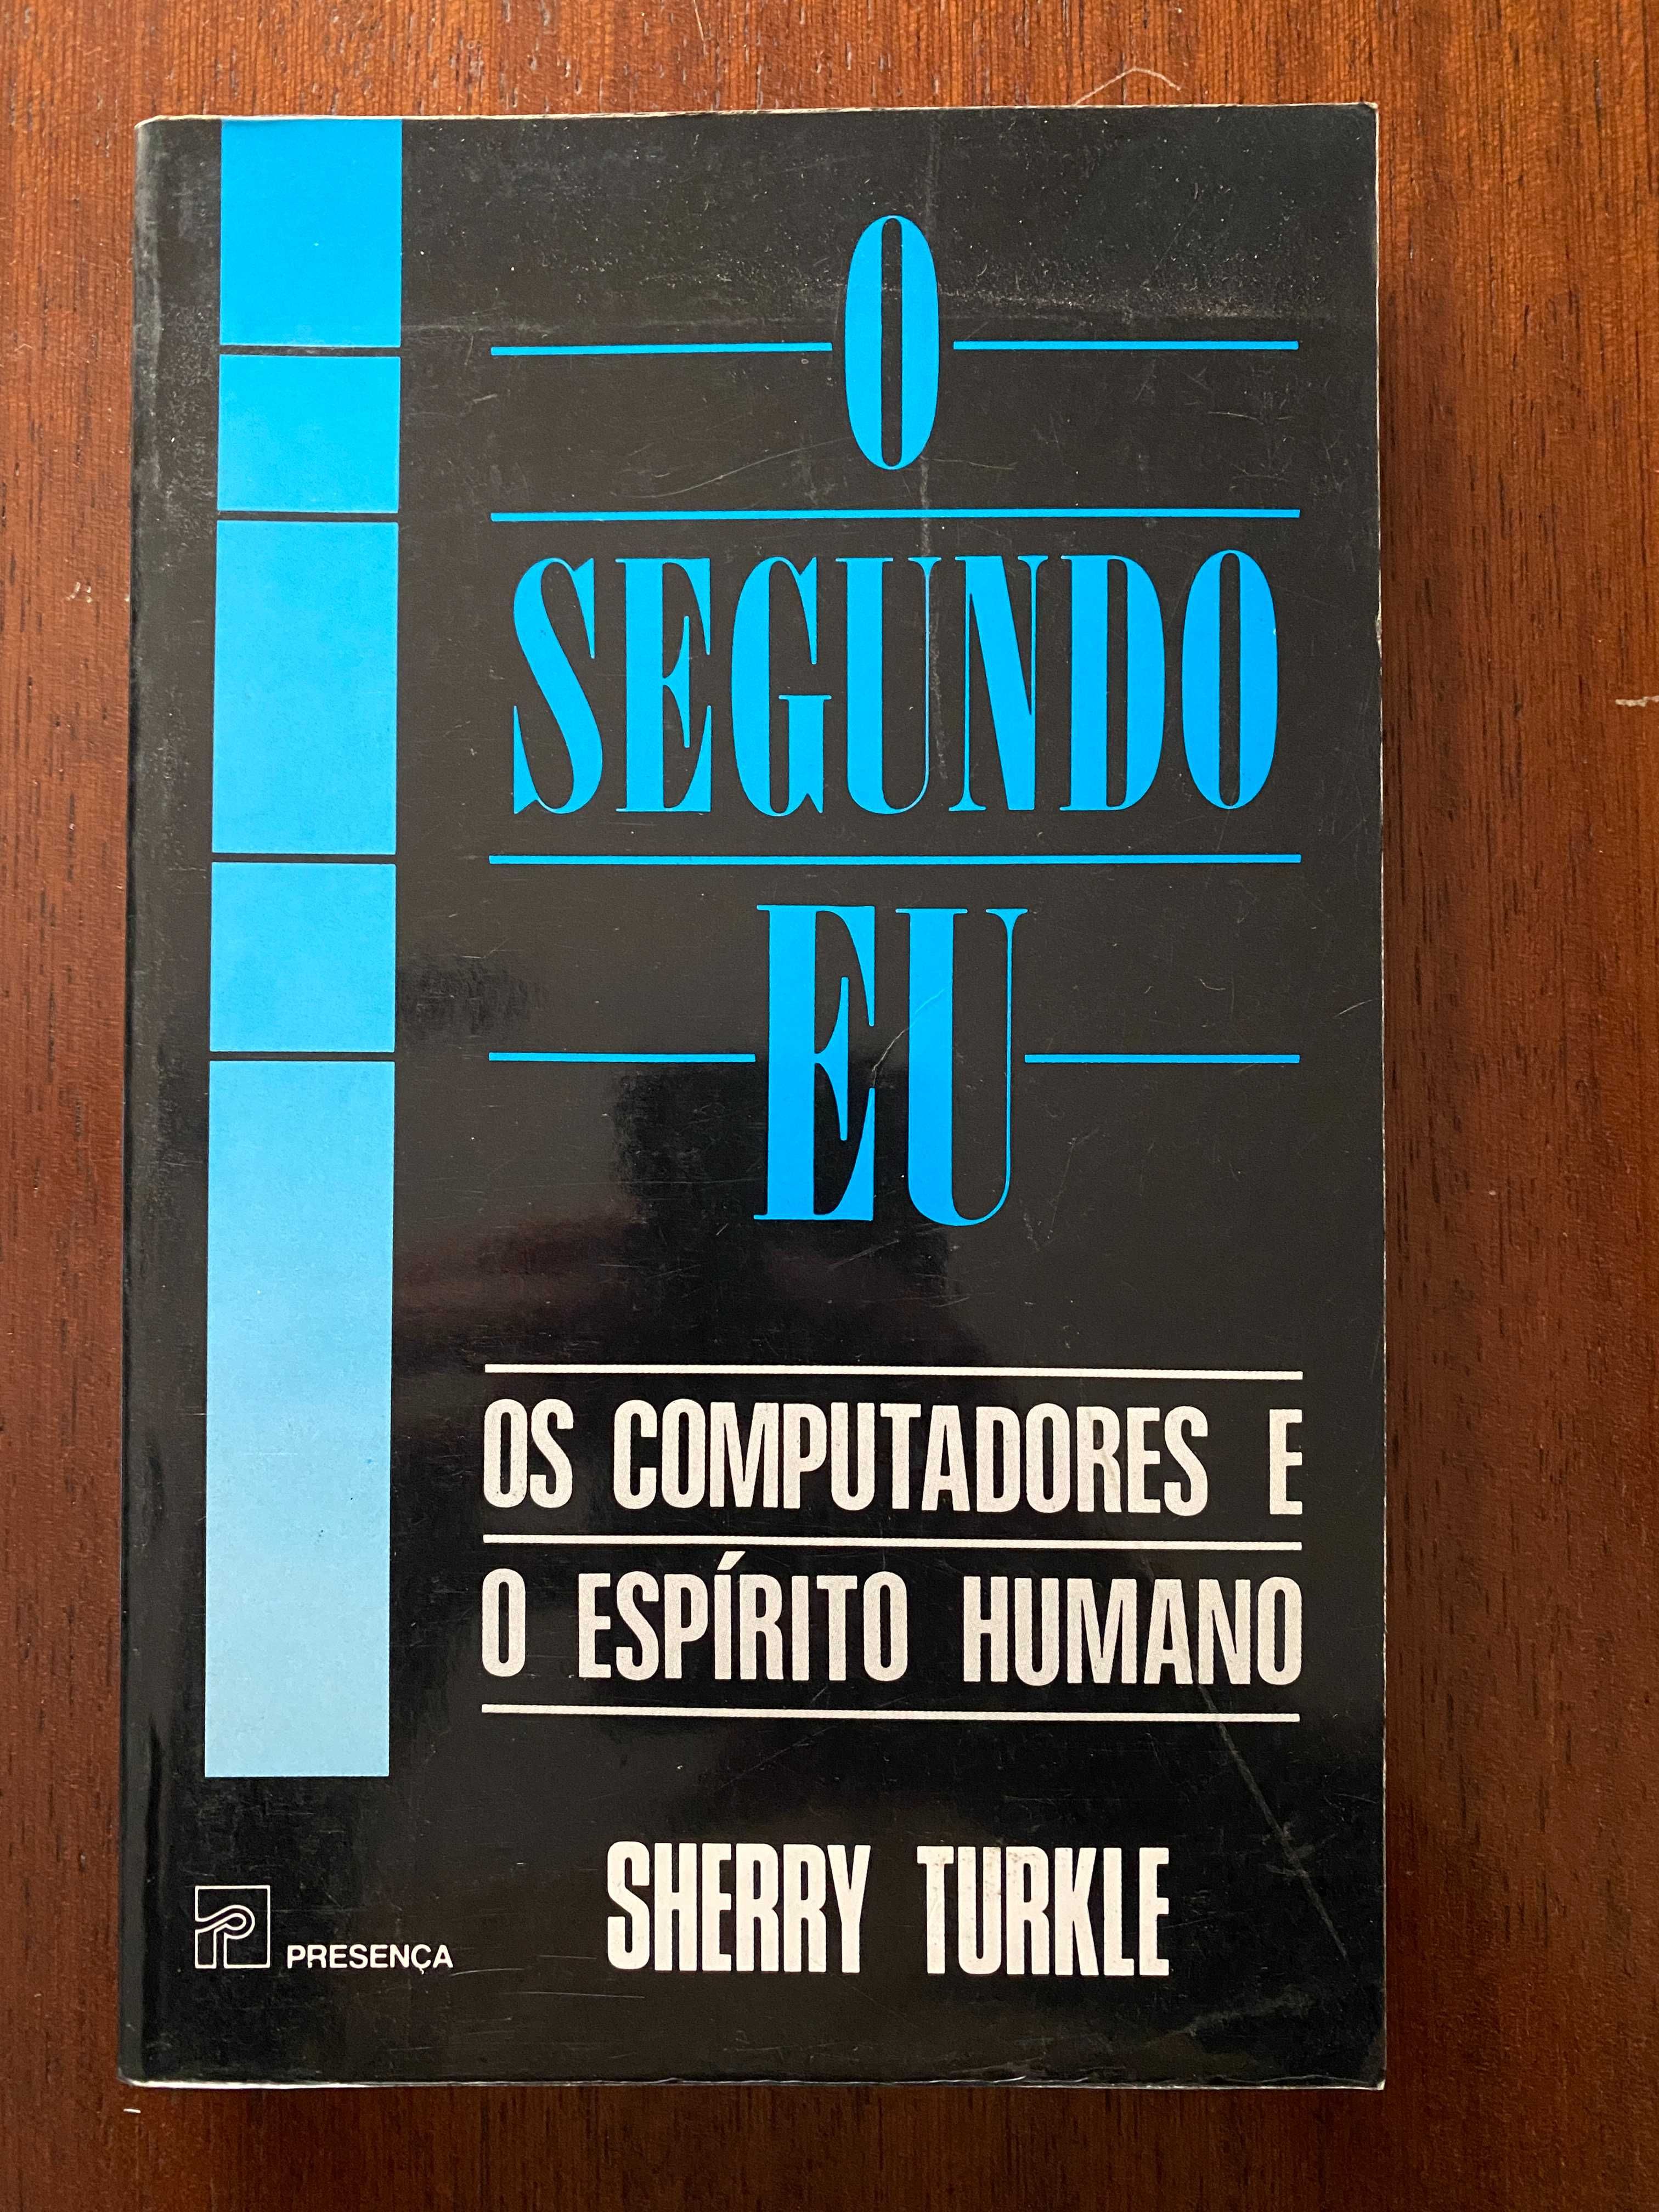 O segundo eu : os computadores e o espírito humano, de Sherry Turkle